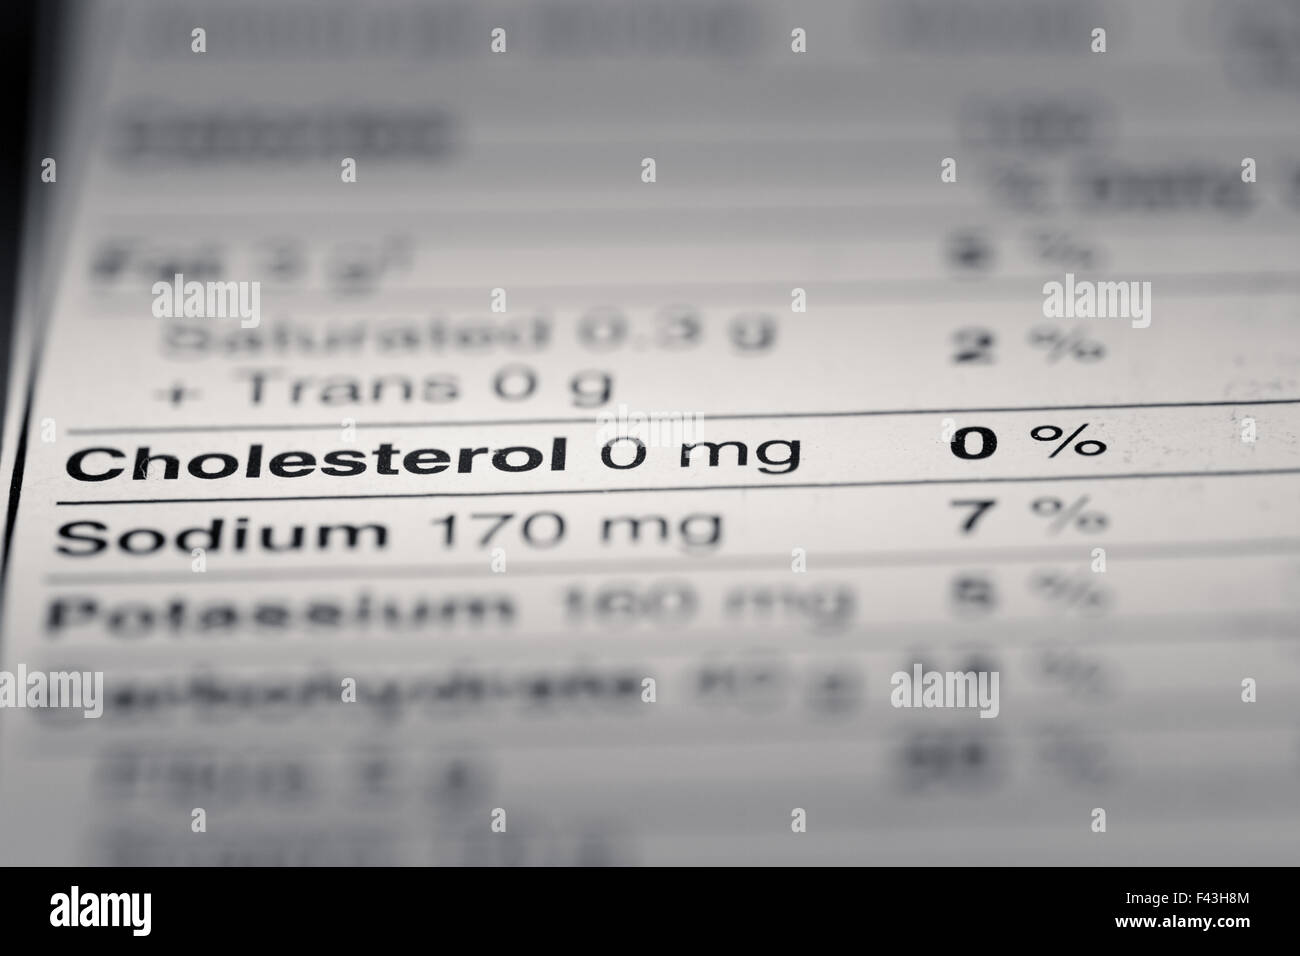 La profondità di campo di una immagine di fatti di nutrizione colesterolo informazioni che possiamo trovare su un negozio di alimentari prodotto. Foto Stock